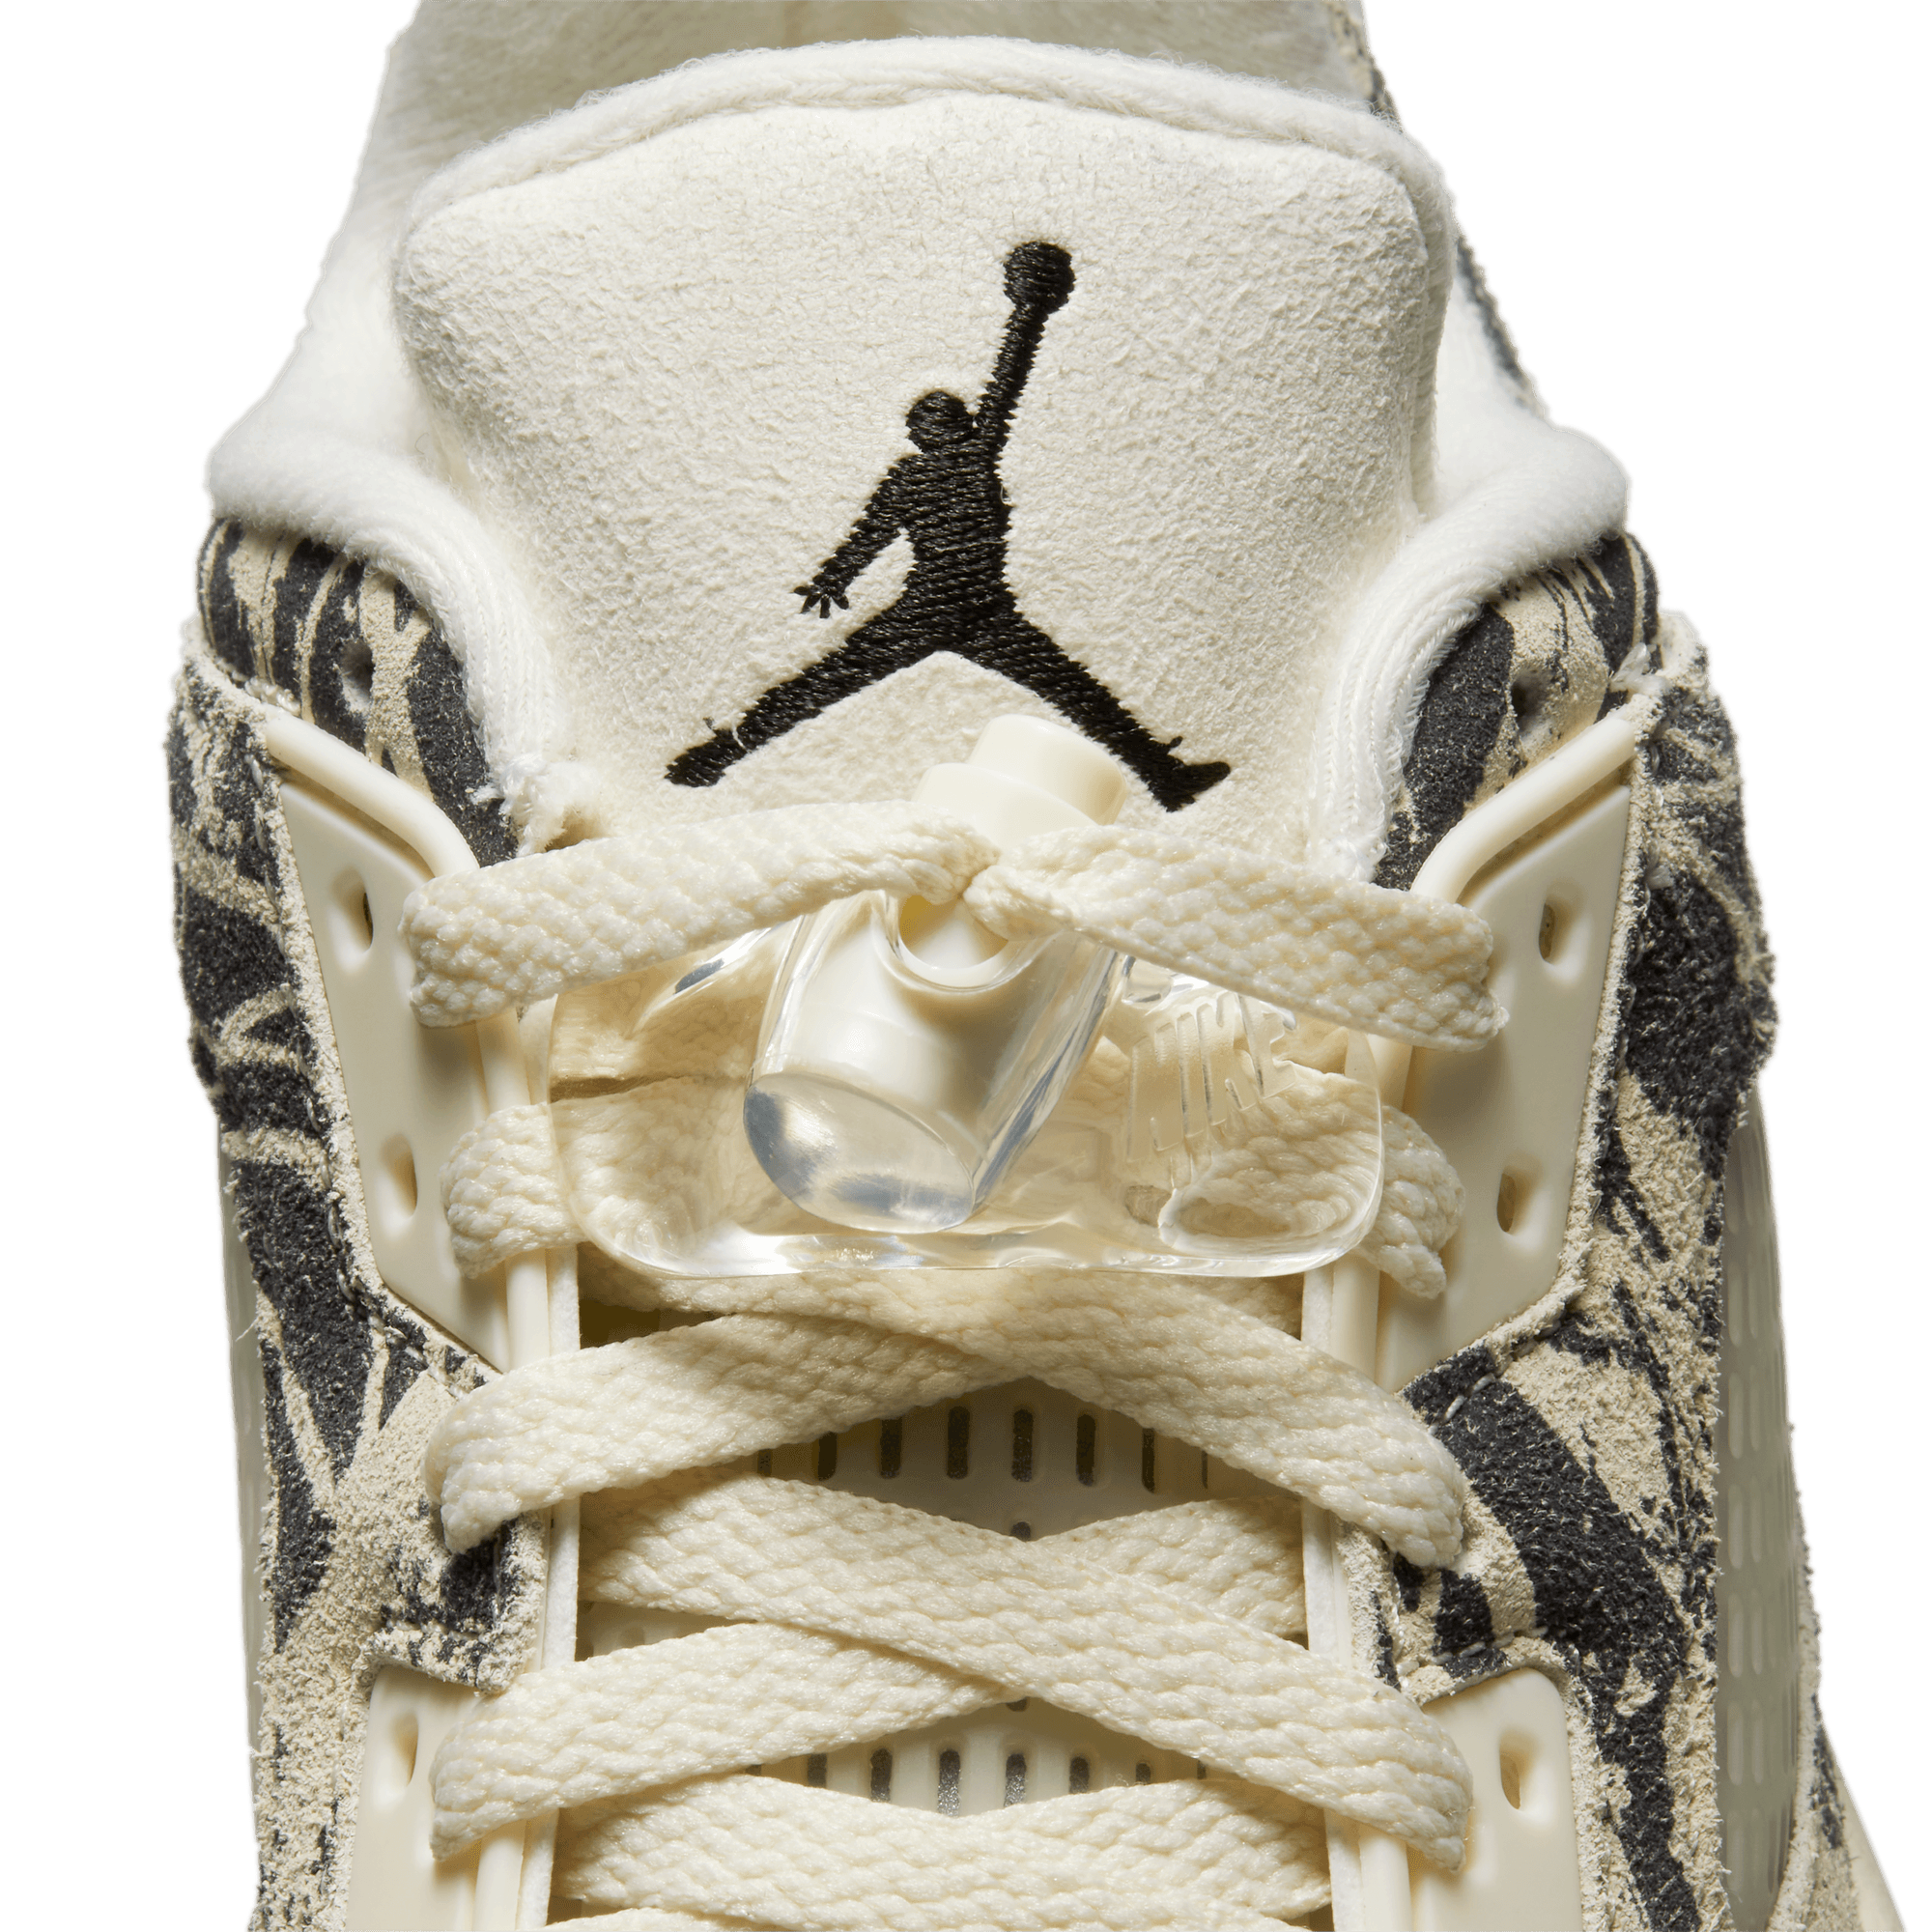 WMNS Nike Air Jordan 5 Retro Low